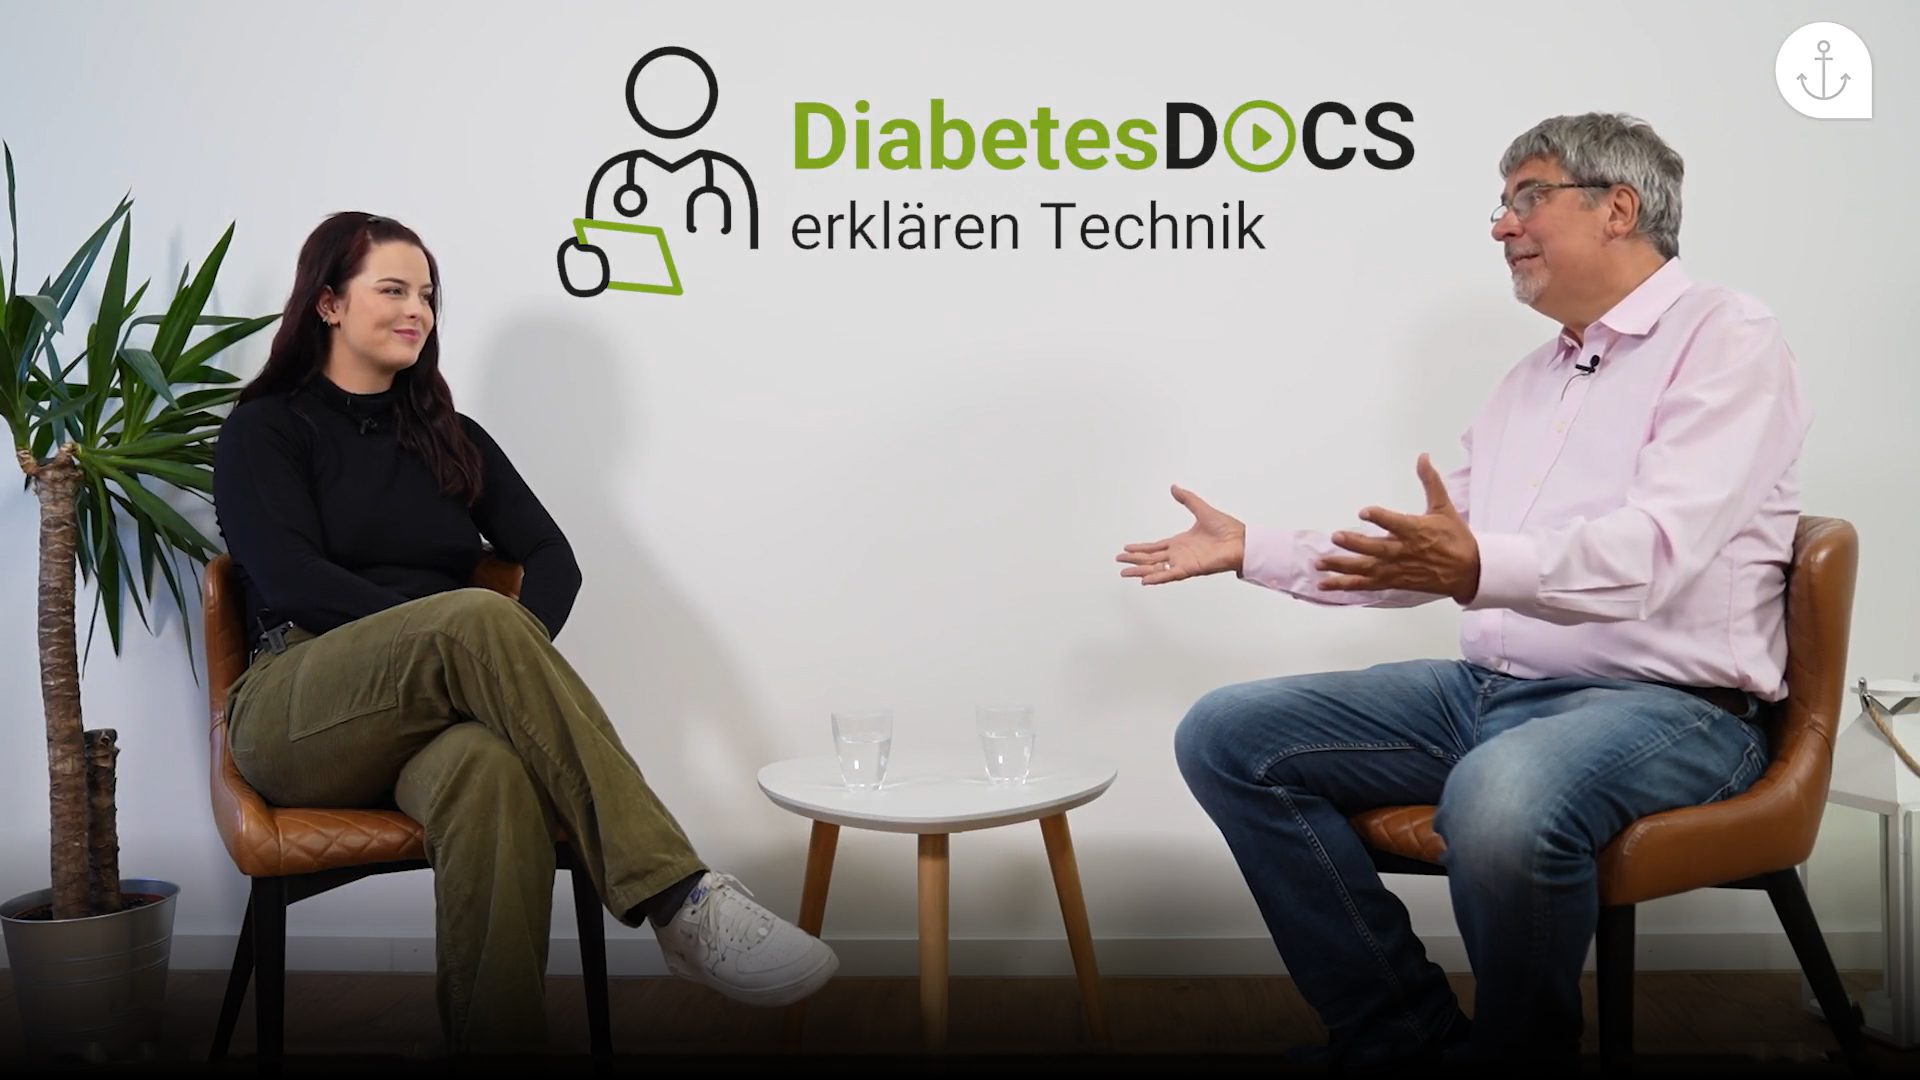 Diabetes-Docs erklären Technik – technologische Unterstützung bei Diabetes